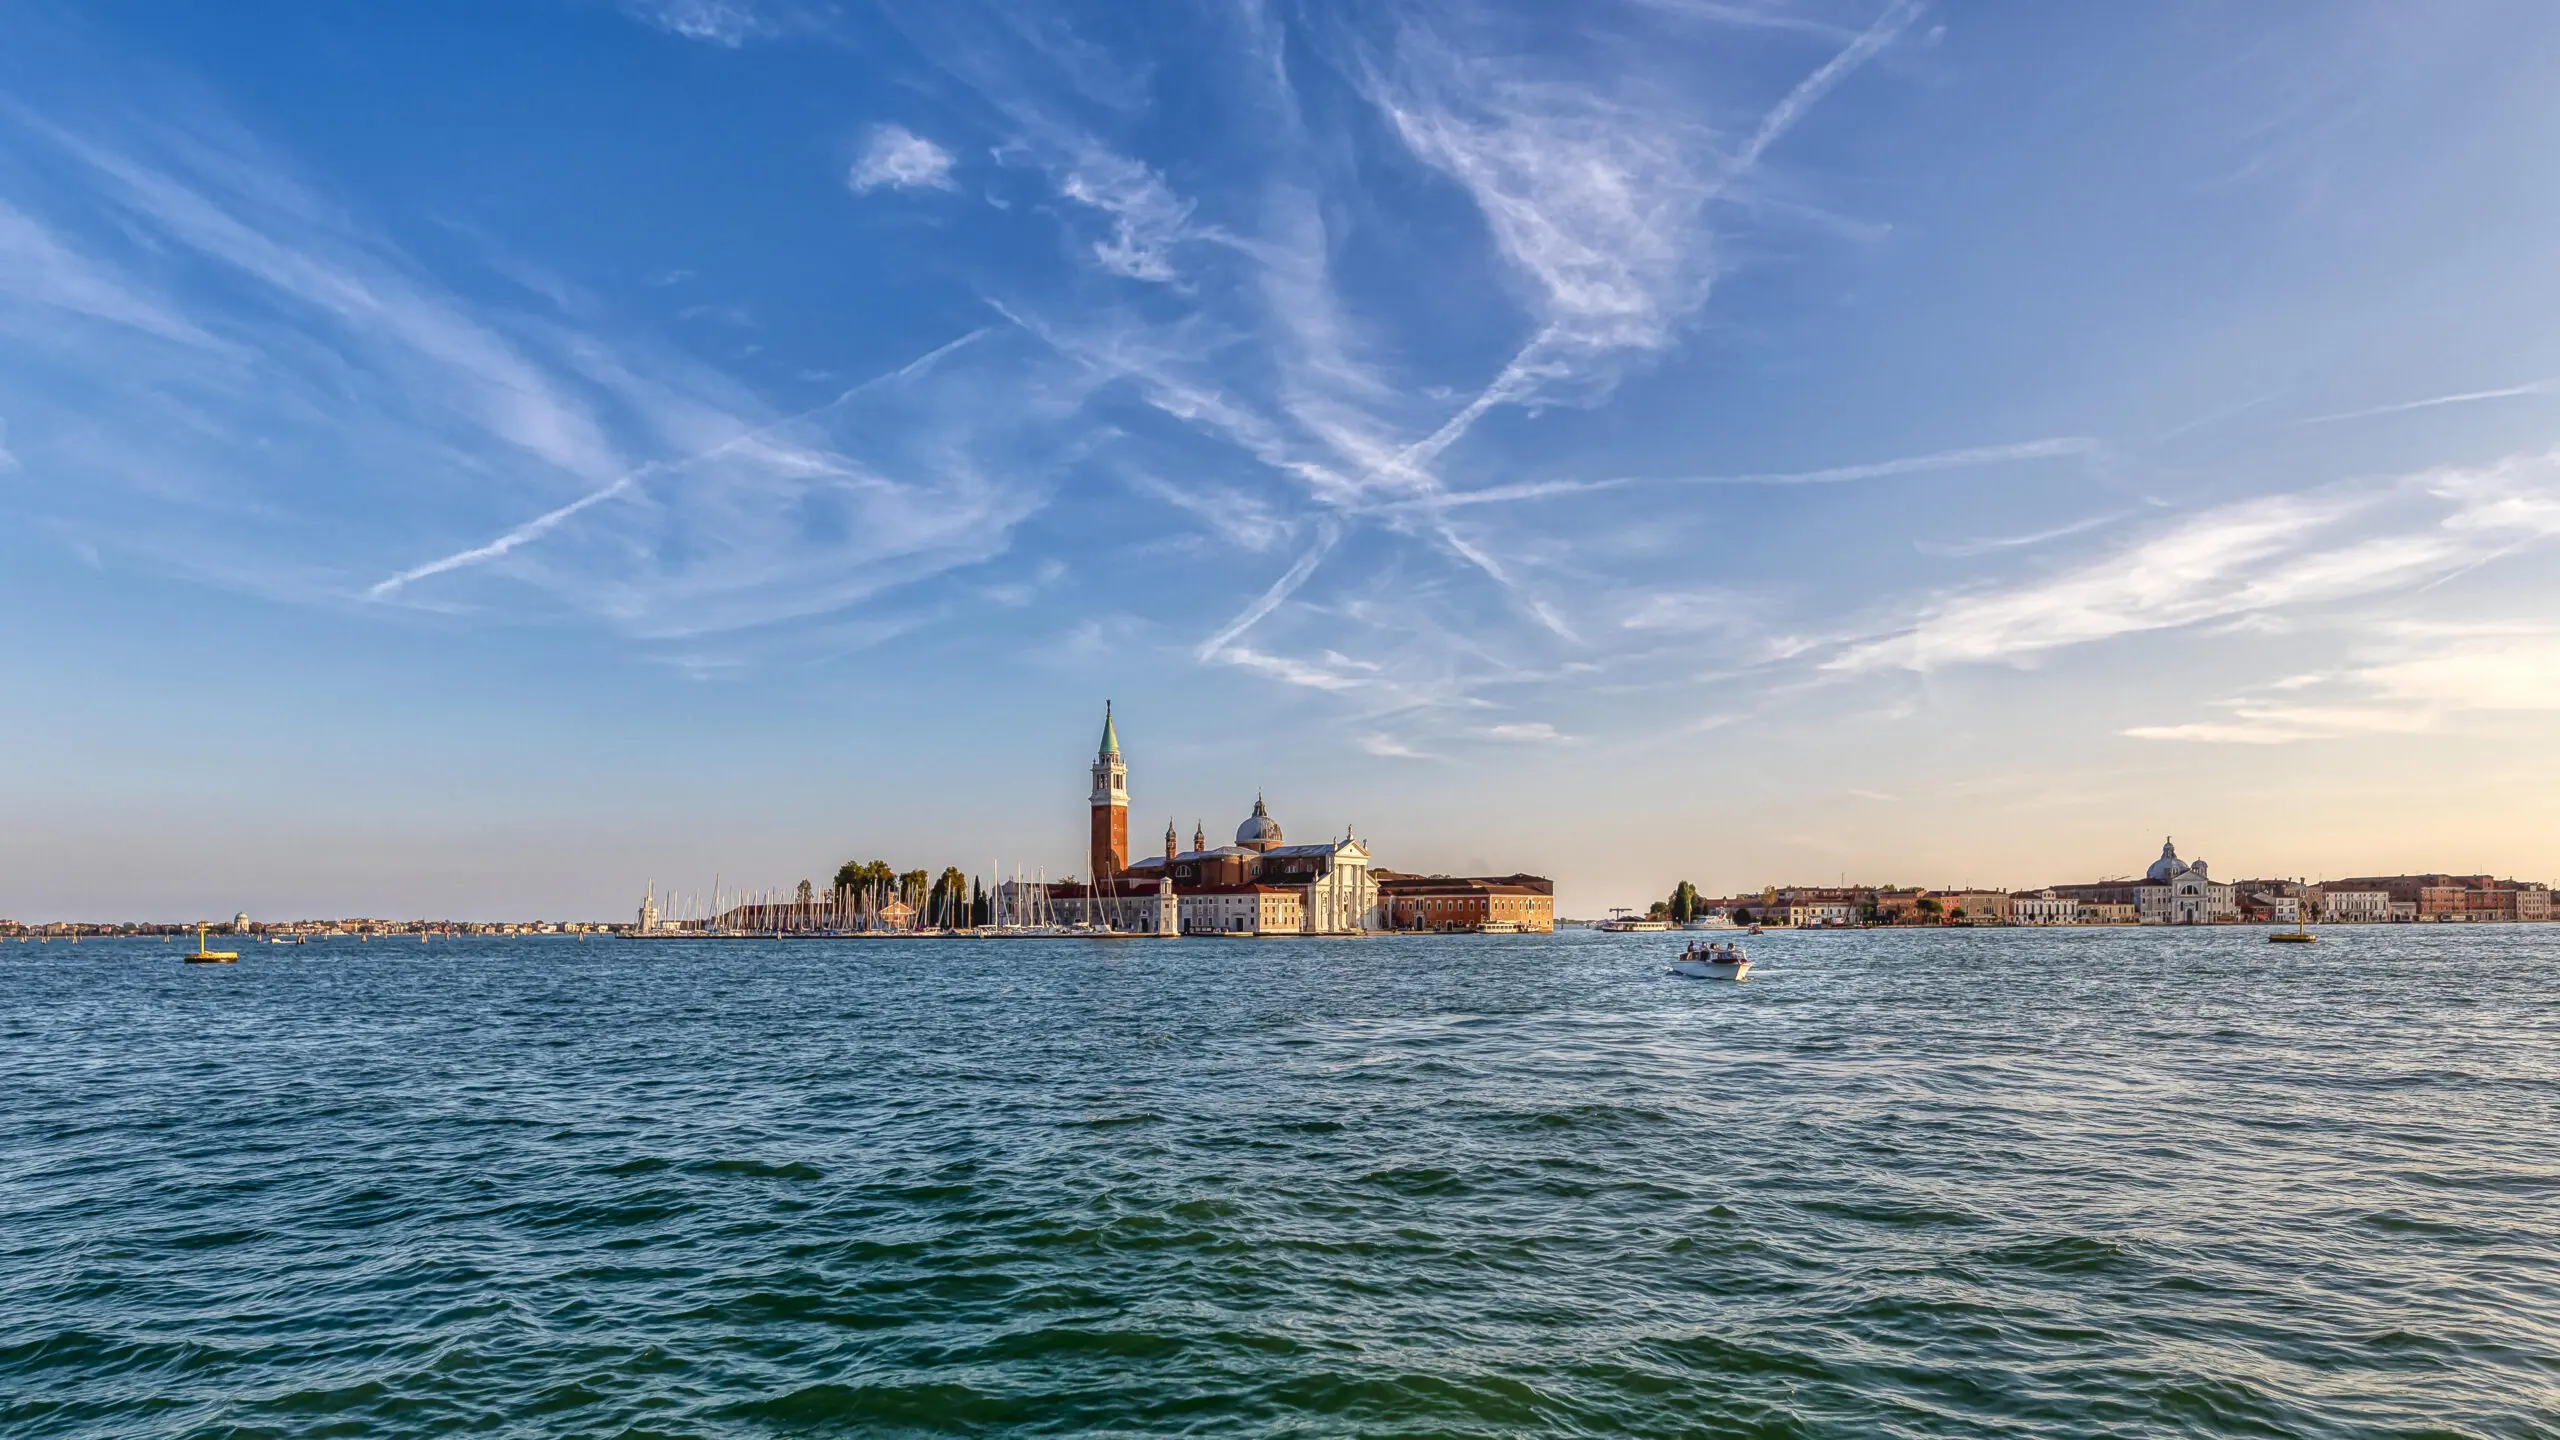 Wandbild (5972) Venice Vaporetto View II präsentiert: Wasser,Architektur,Häuser,Skylines,Sehenswürdigkeiten,Meere